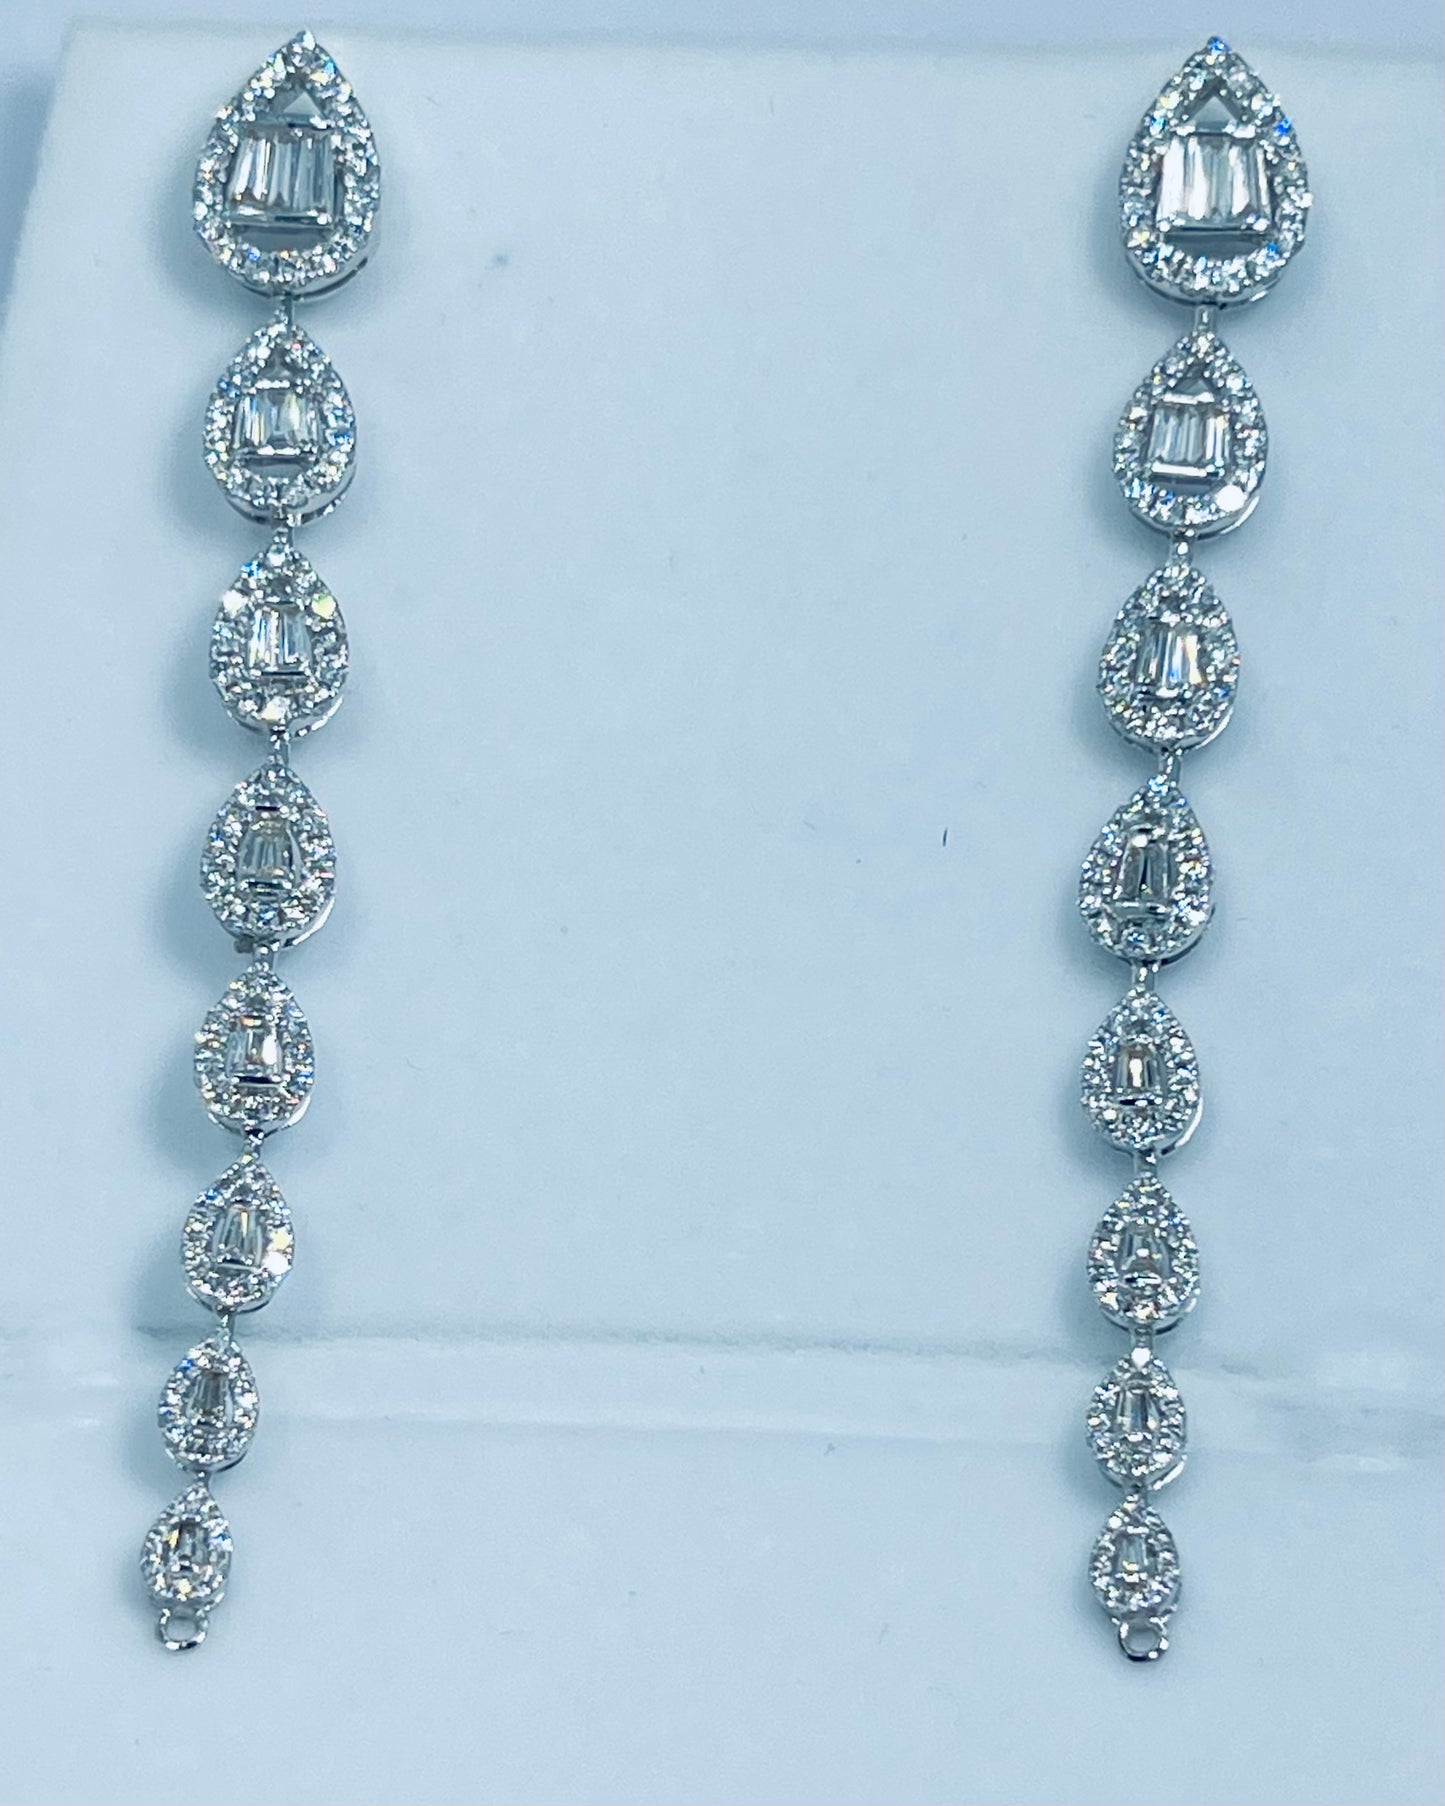 Dangling Diamond Earrings